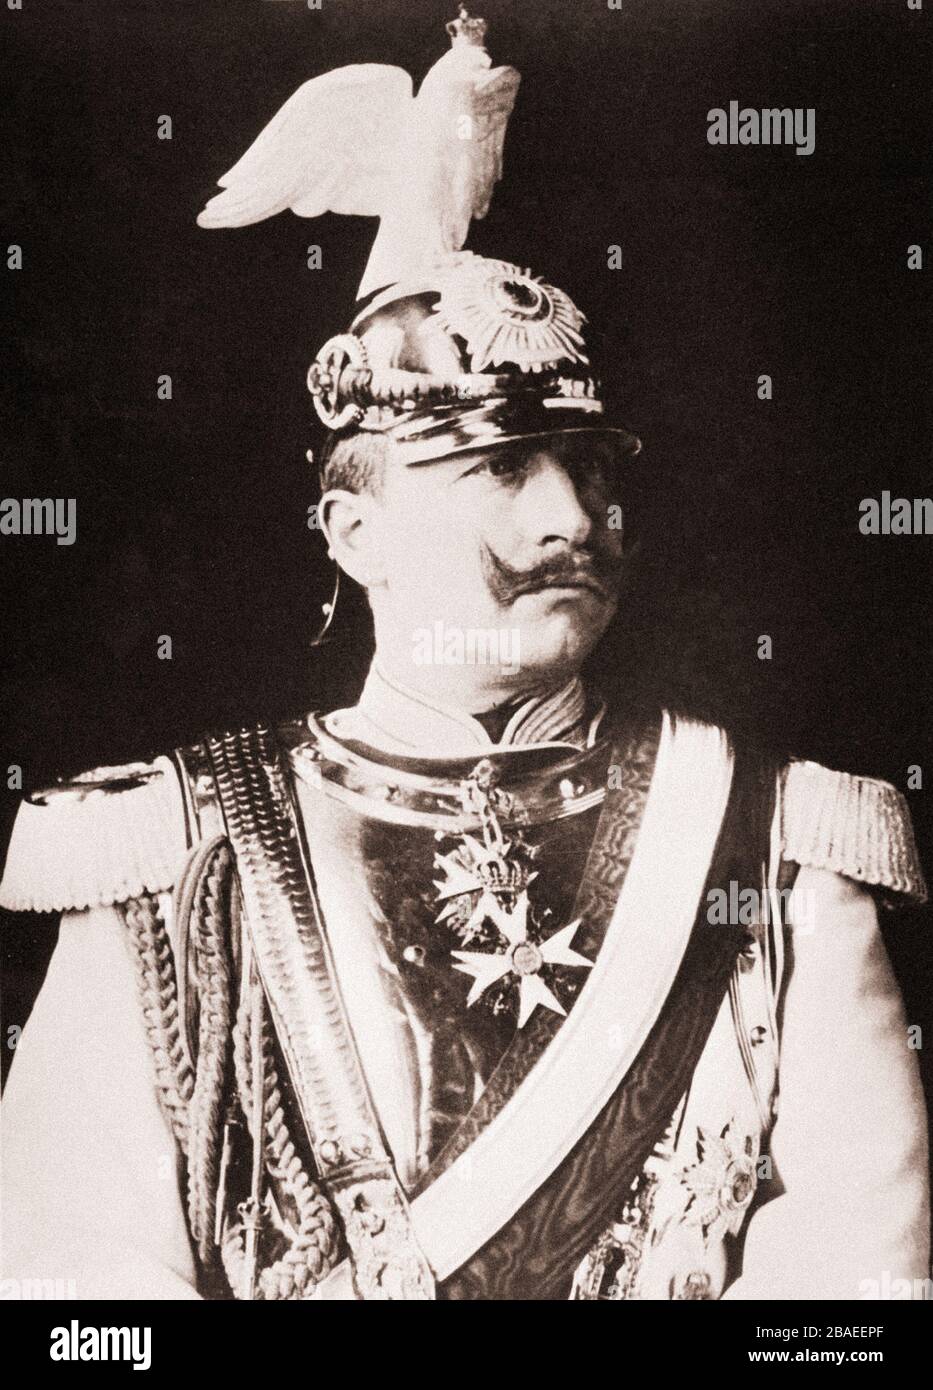 Wilhelm II ou William II (1859 – 4 juin 1941) le dernier empereur allemand (Kaiser) et roi de Prusse. Il régna du 15 juin 1888 jusqu'à son abdication Banque D'Images